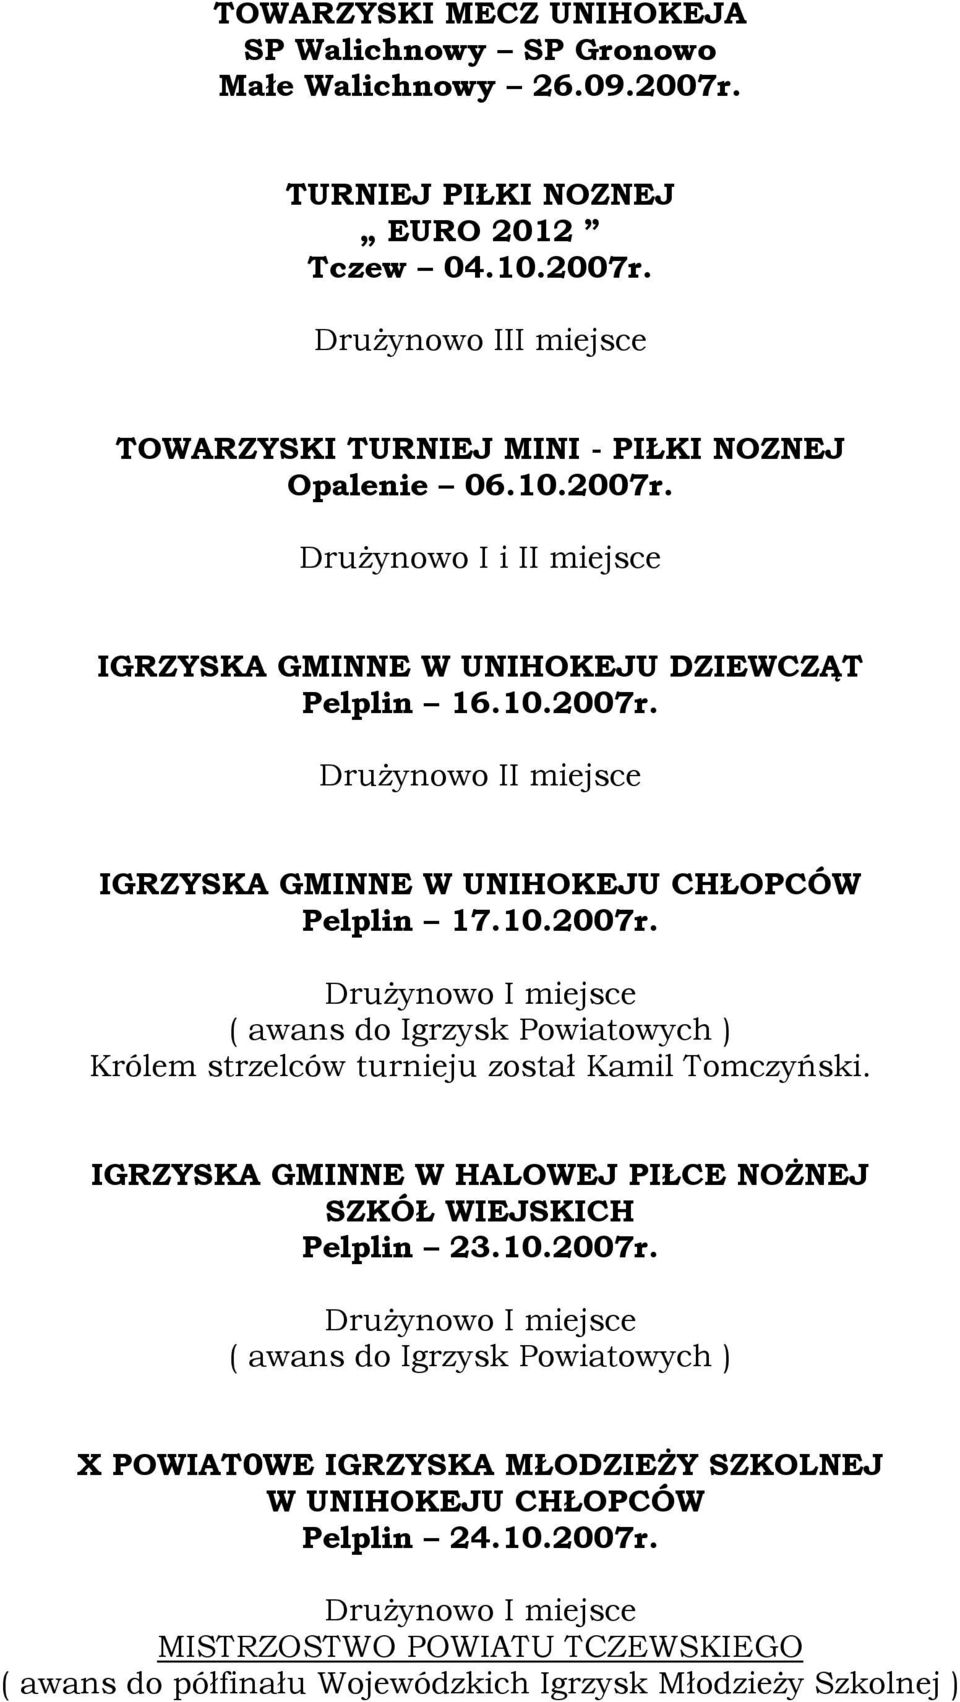 IGRZYSKA GMINNE W HALOWEJ PIŁCE NOŻNEJ SZKÓŁ WIEJSKICH Pelplin 23.10.2007r.